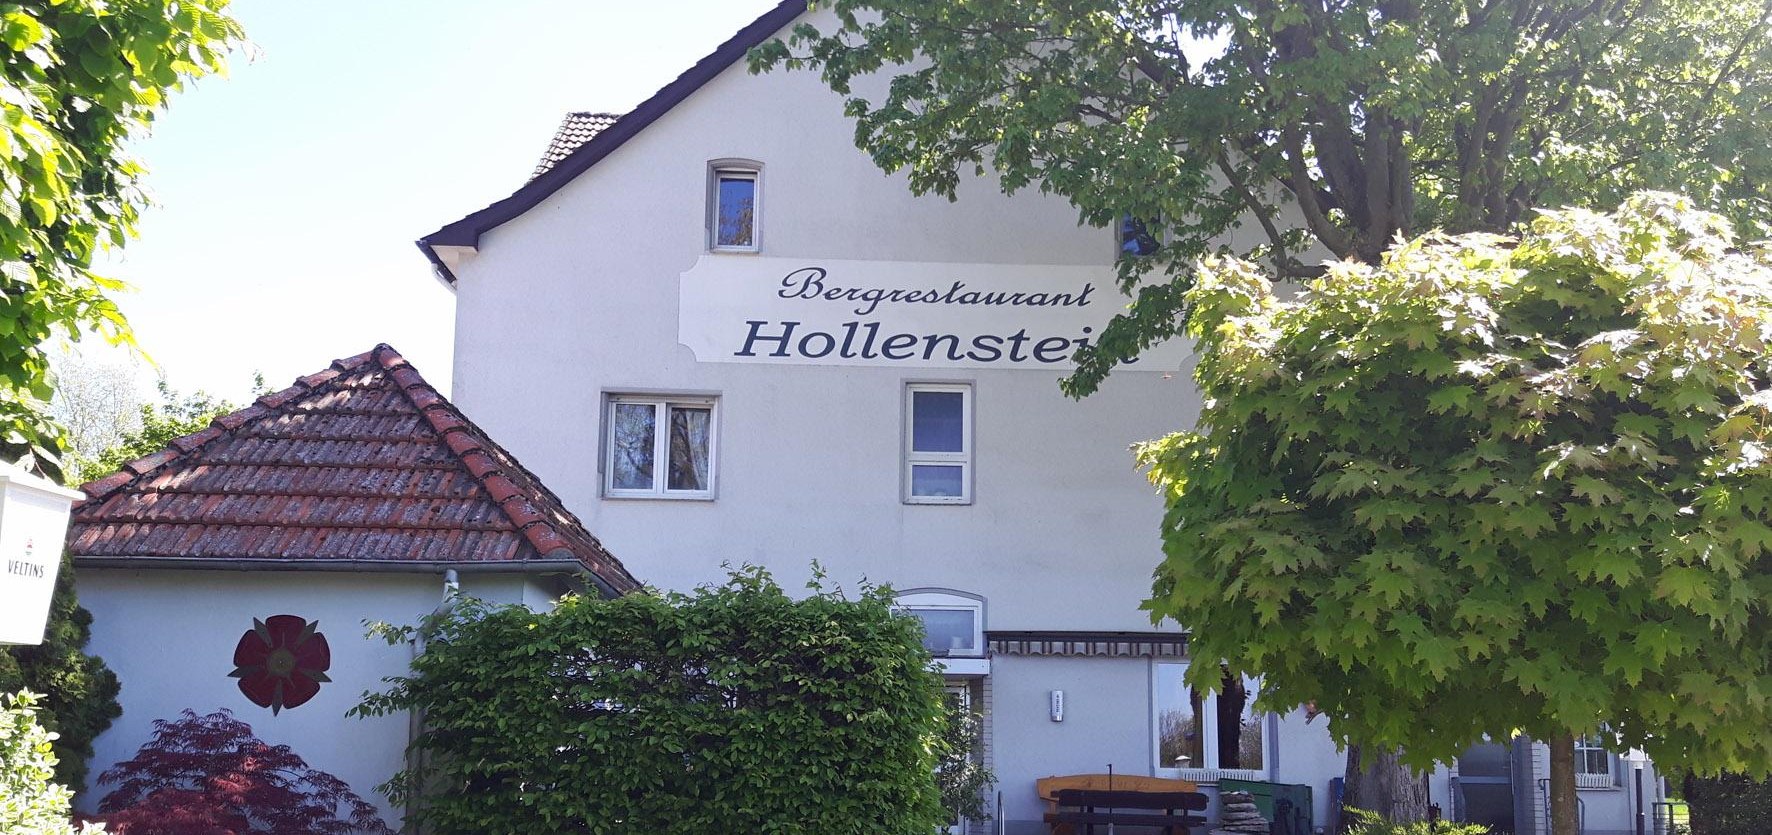 Bergrestaurant Hollenstein quer, © Julia Lüdeking